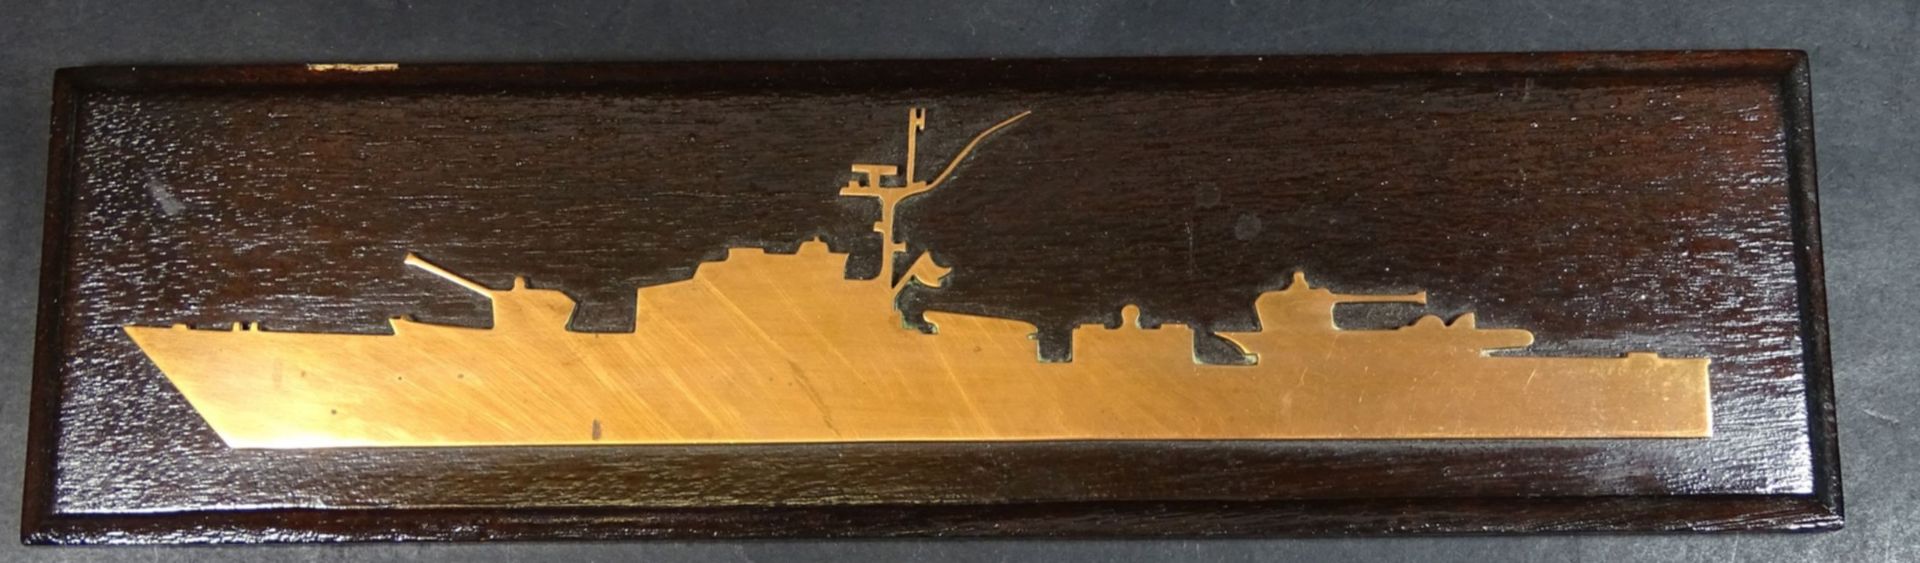 Kriegsschiff aus Kupfer auf Holzbrett, rückseitig Liste Besatzung, 10x35 c